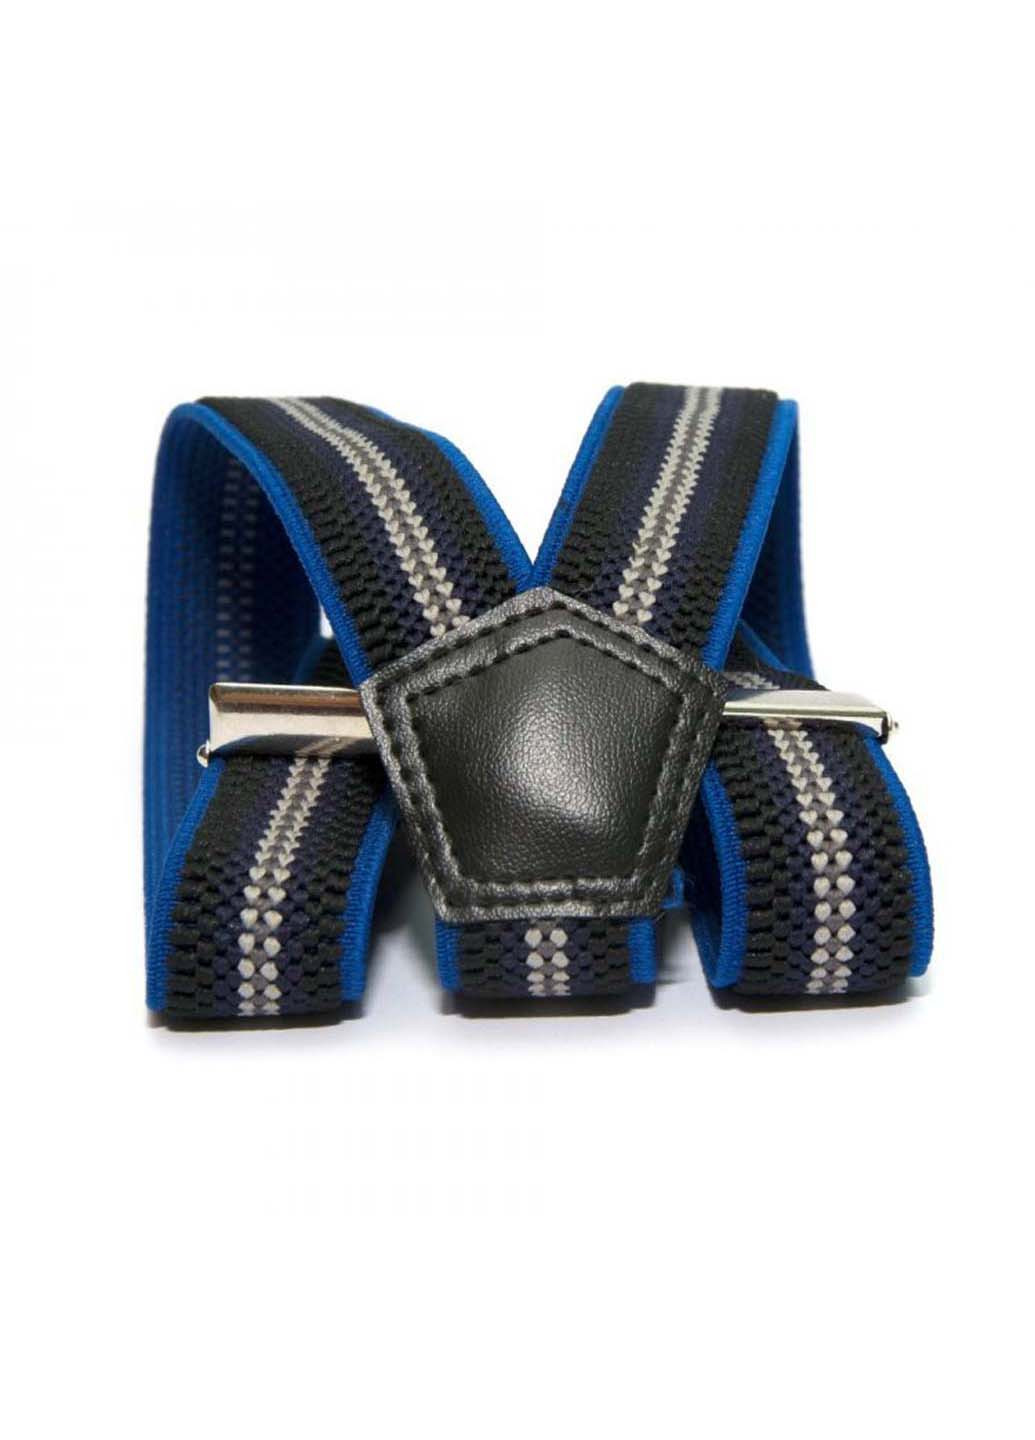 Подтяжки Gofin suspenders (255412791)